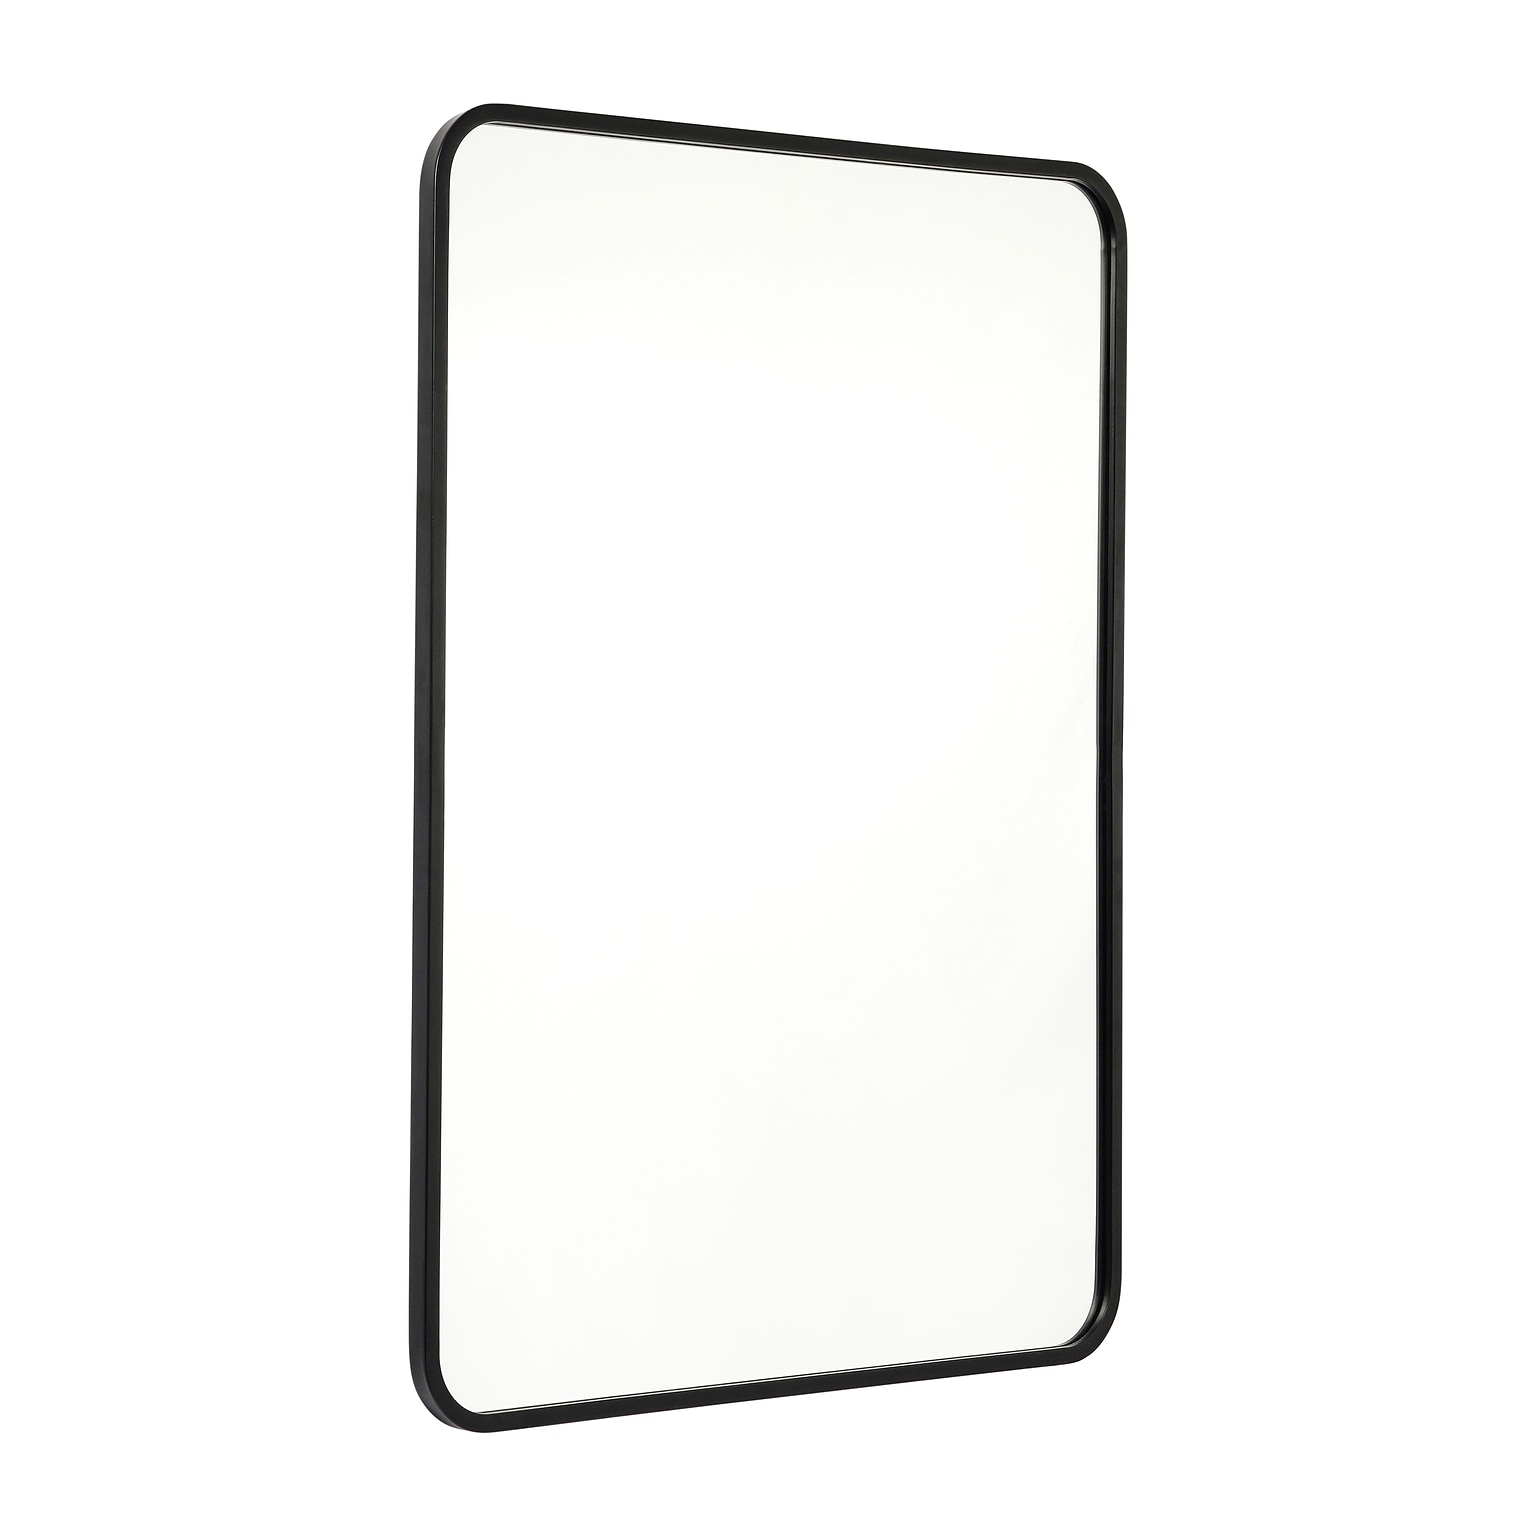 Flash Furniture Jada Decorative Wall Mirror, 24 x 36 Matte Black (HMHD22M199YBNBK)